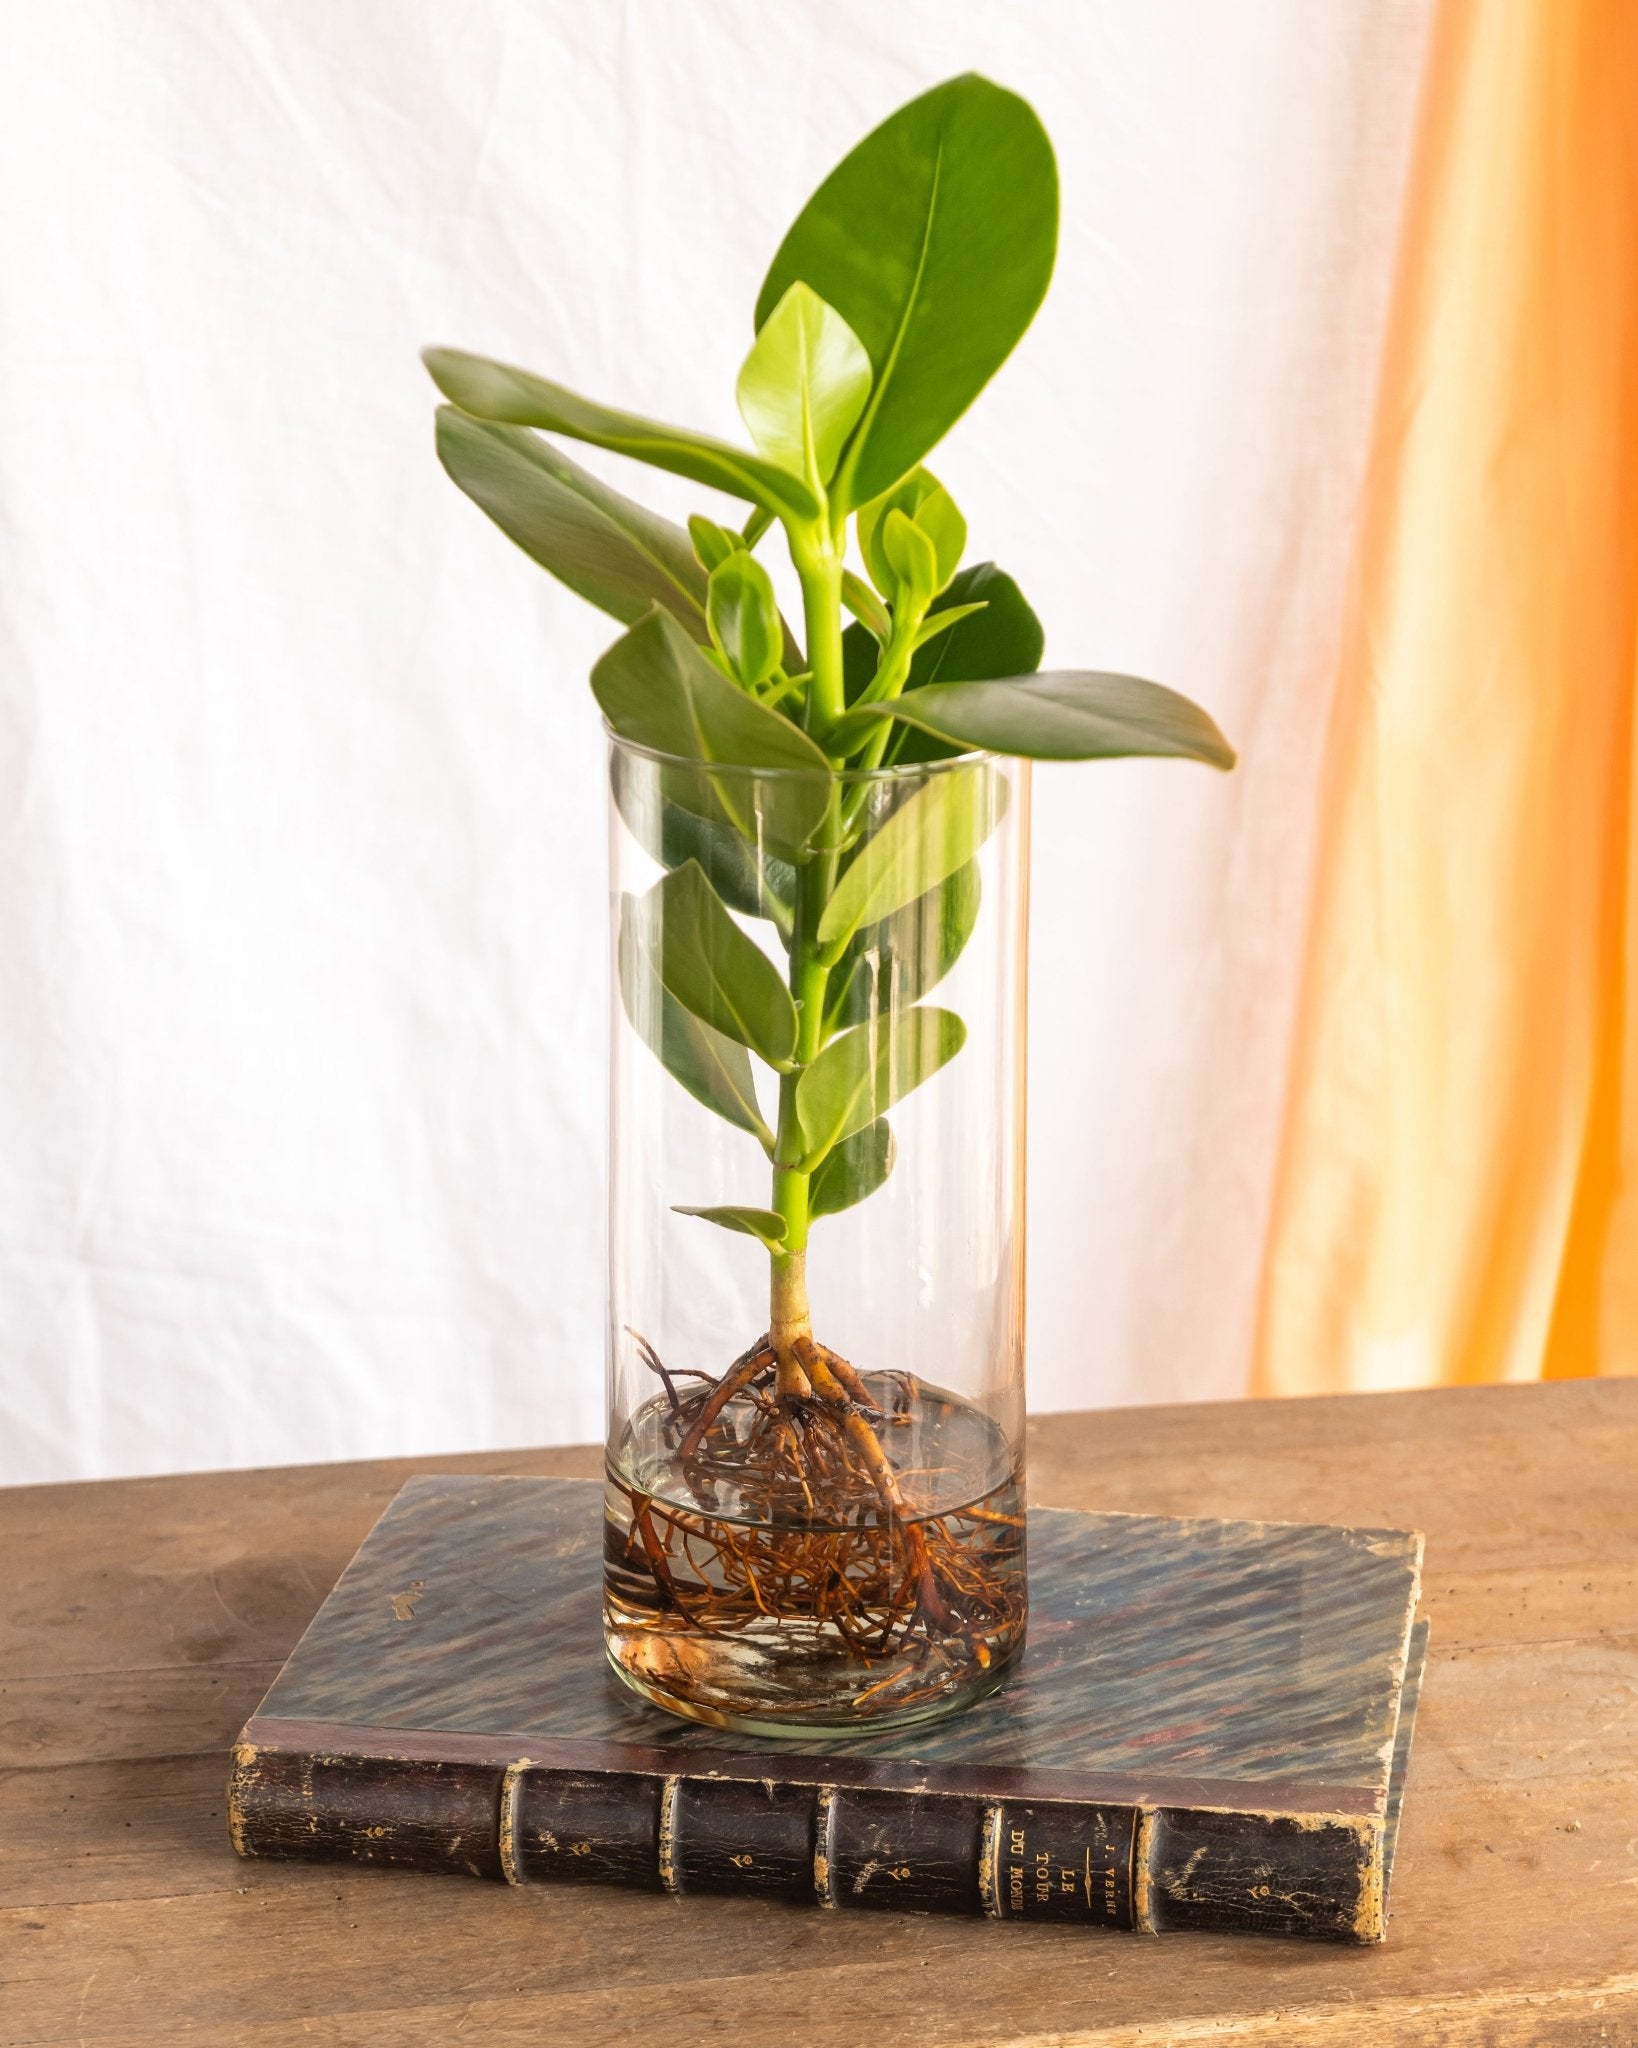 Plante d'intérieur - clusia en hydroculture dans son vase tube en verre 30.0cm